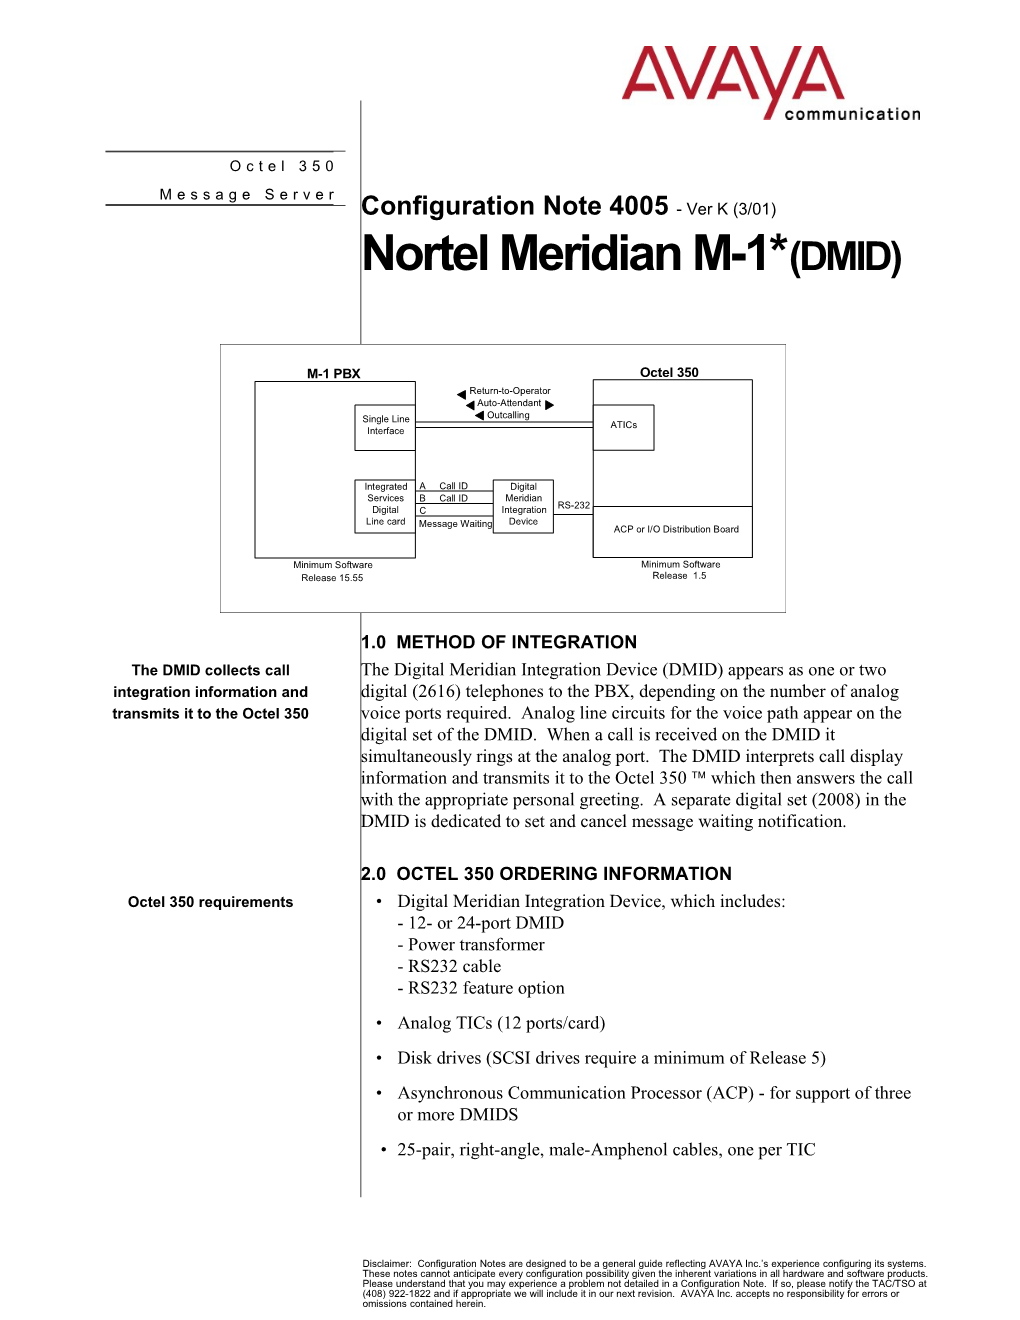 Nortel Meridian M-1* Confidential1